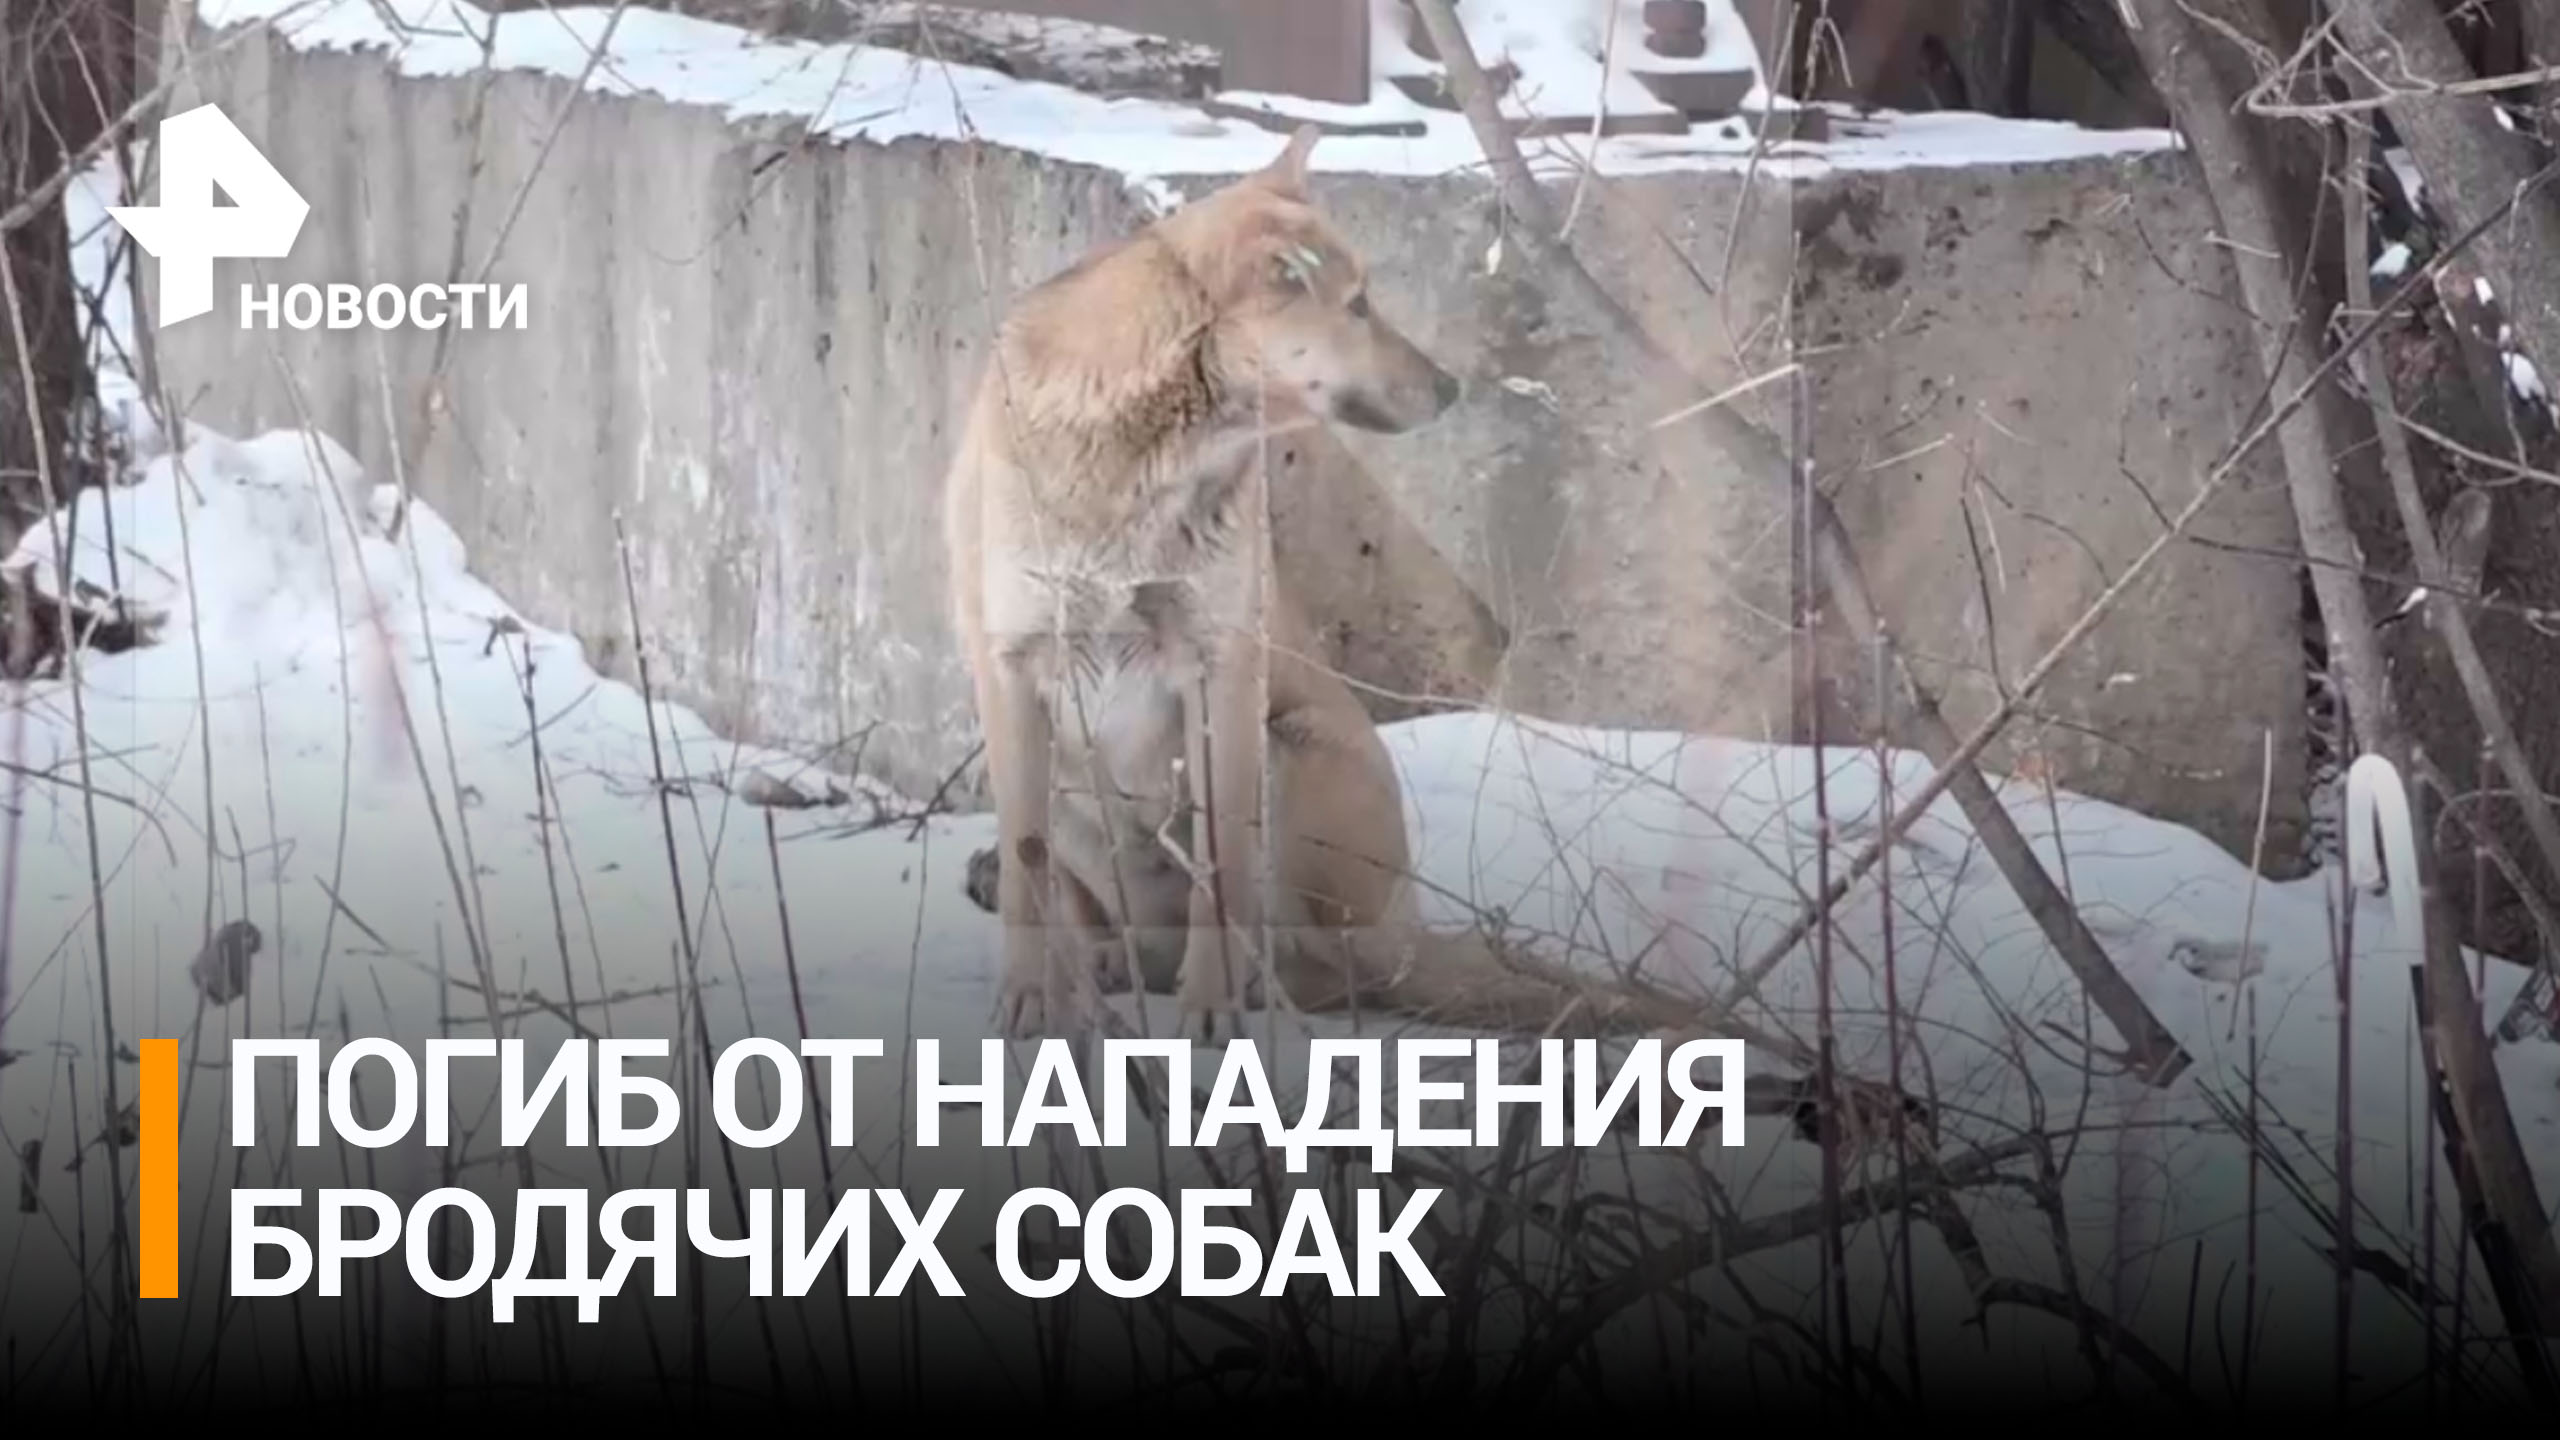 Мужчина погиб после нападения стаи бездомных собак в Хабаровске. Возбуждено уголовное дело / РЕН